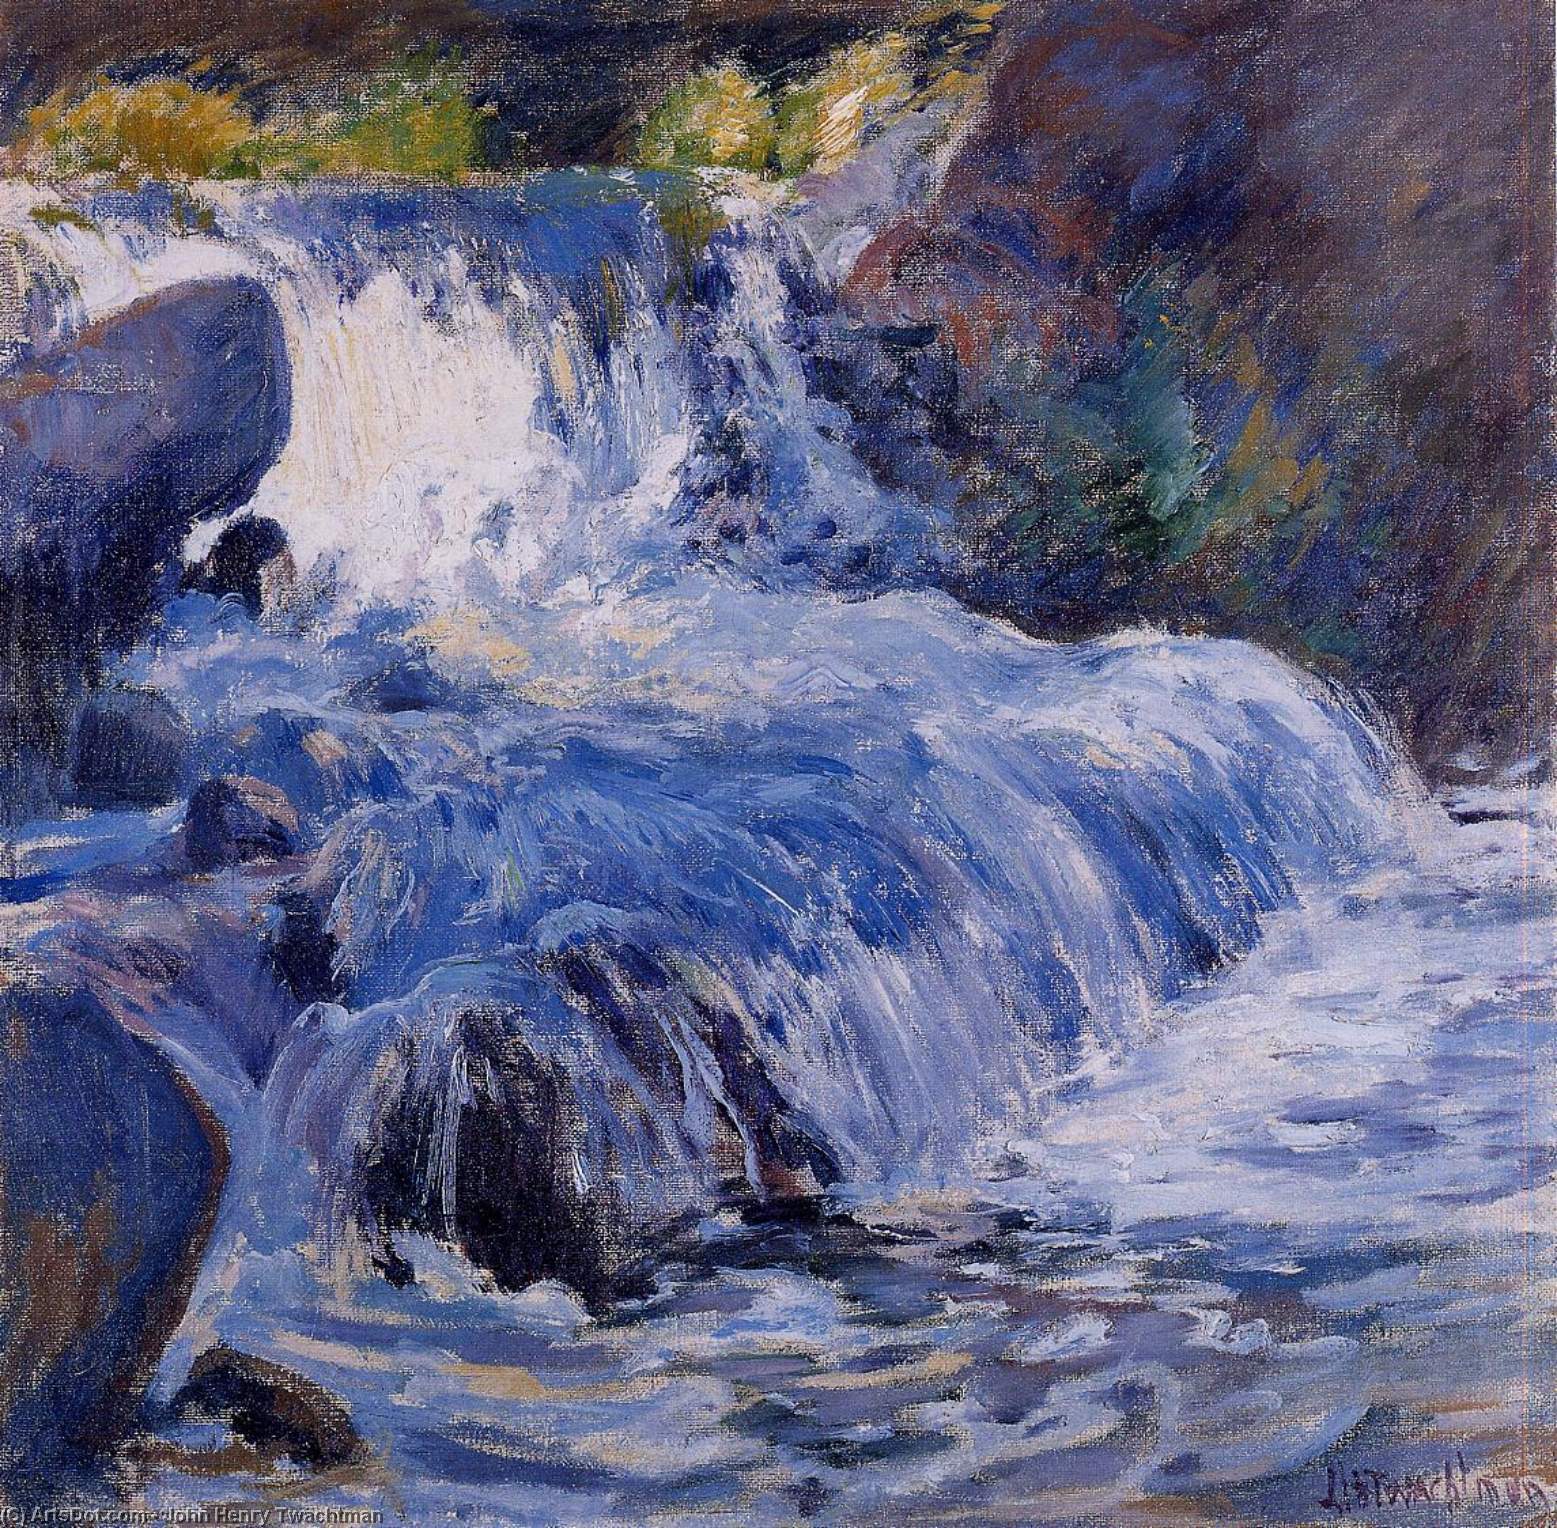 WikiOO.org - Encyclopedia of Fine Arts - Maleri, Artwork John Henry Twachtman - The Waterfall